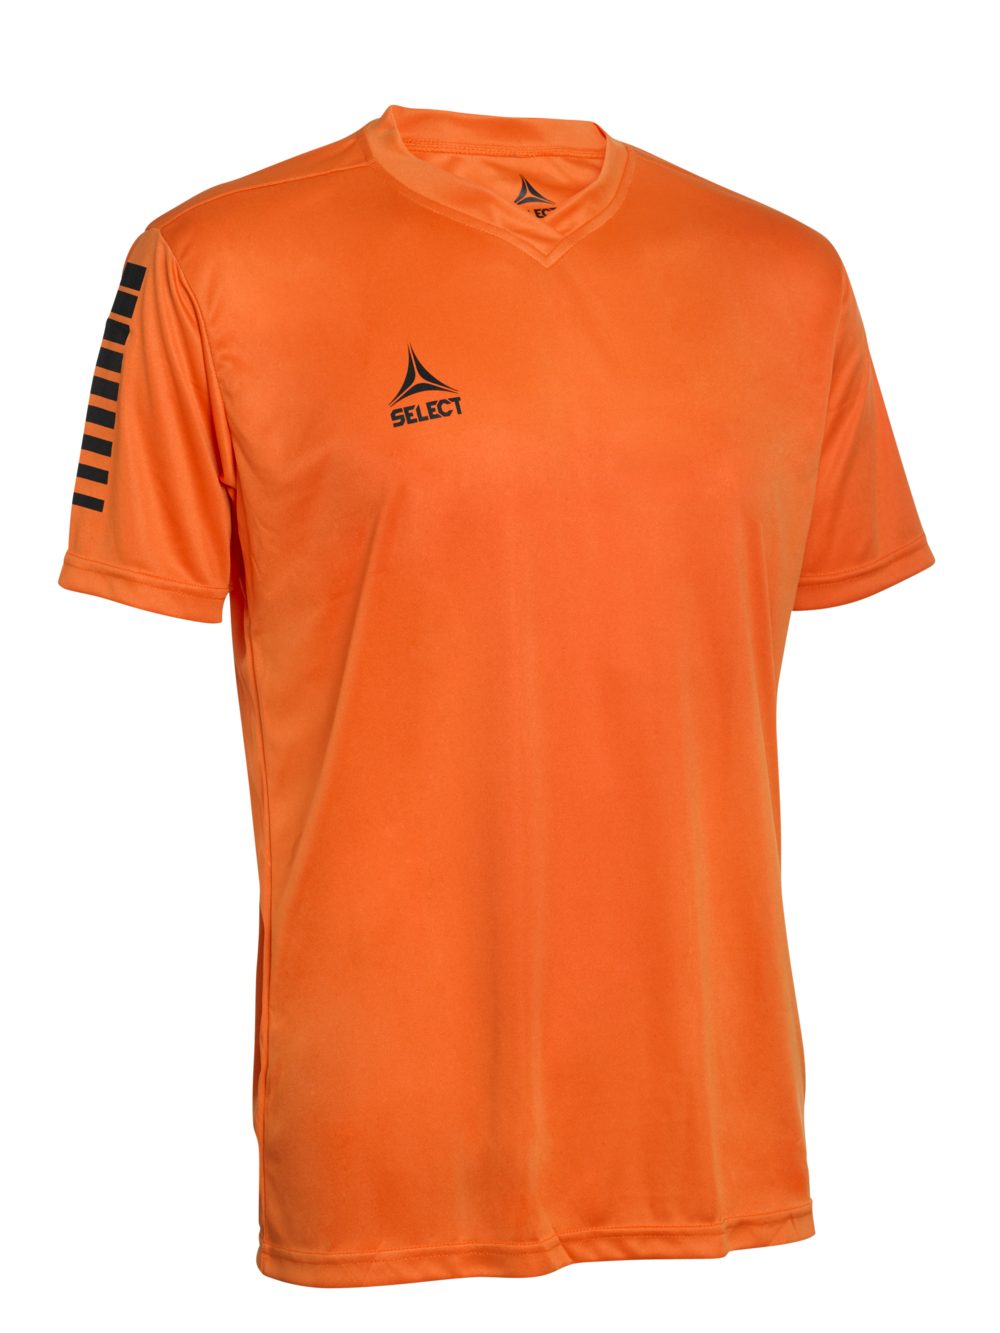 pisa_player_shirt_s-s_orange